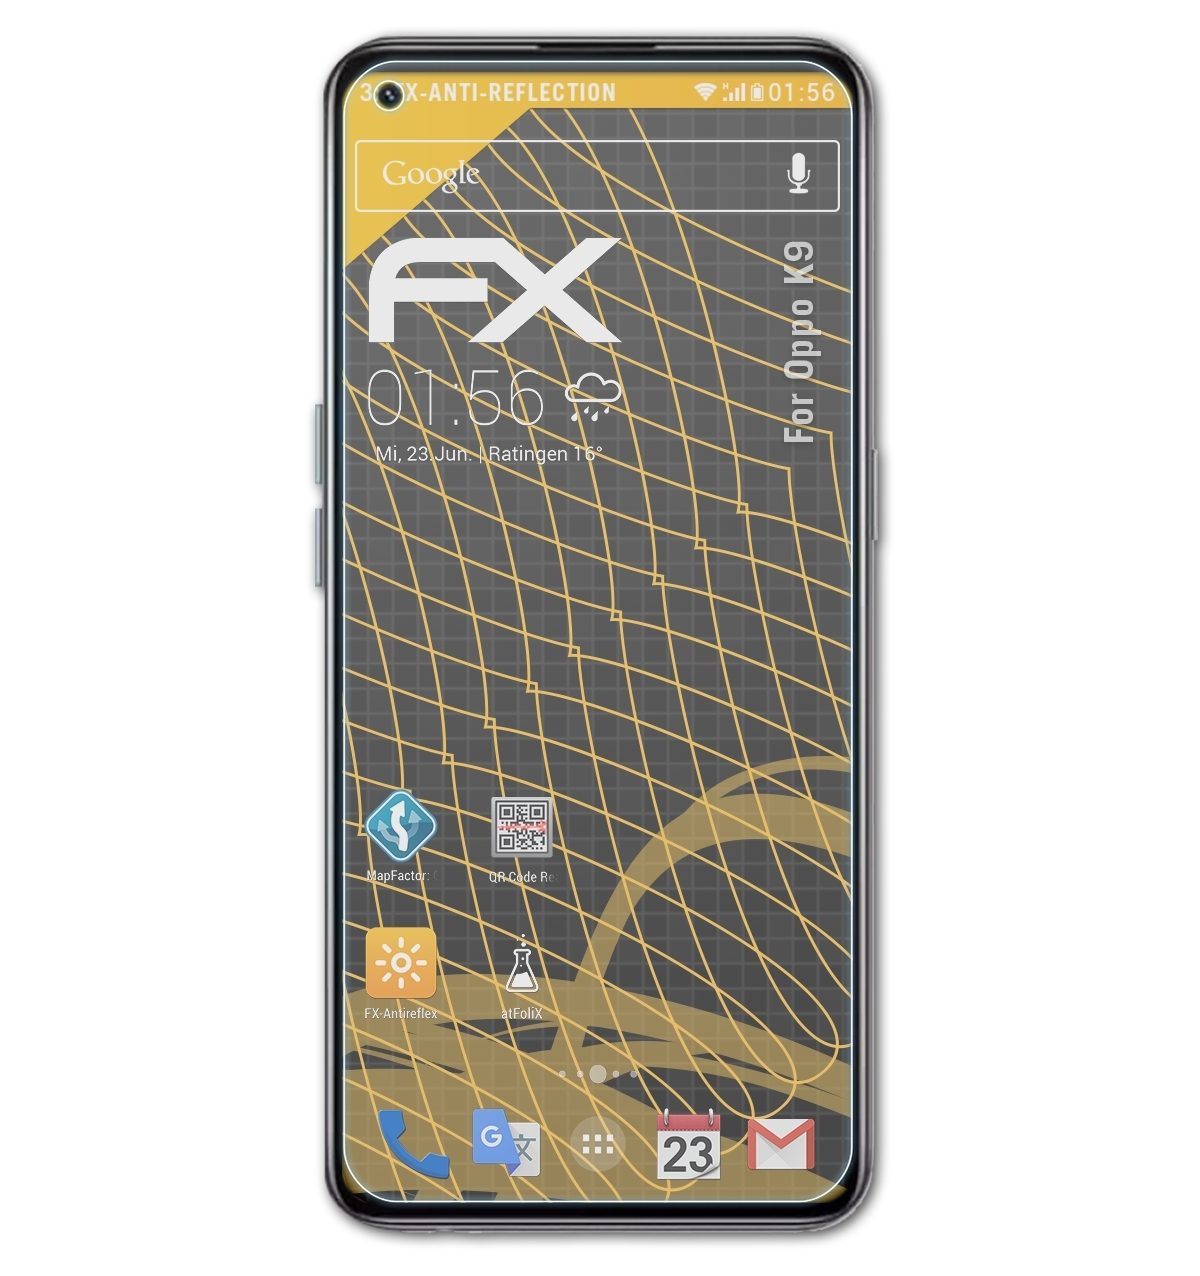 ATFOLIX 3x FX-Antireflex Displayschutz(für Oppo K9)